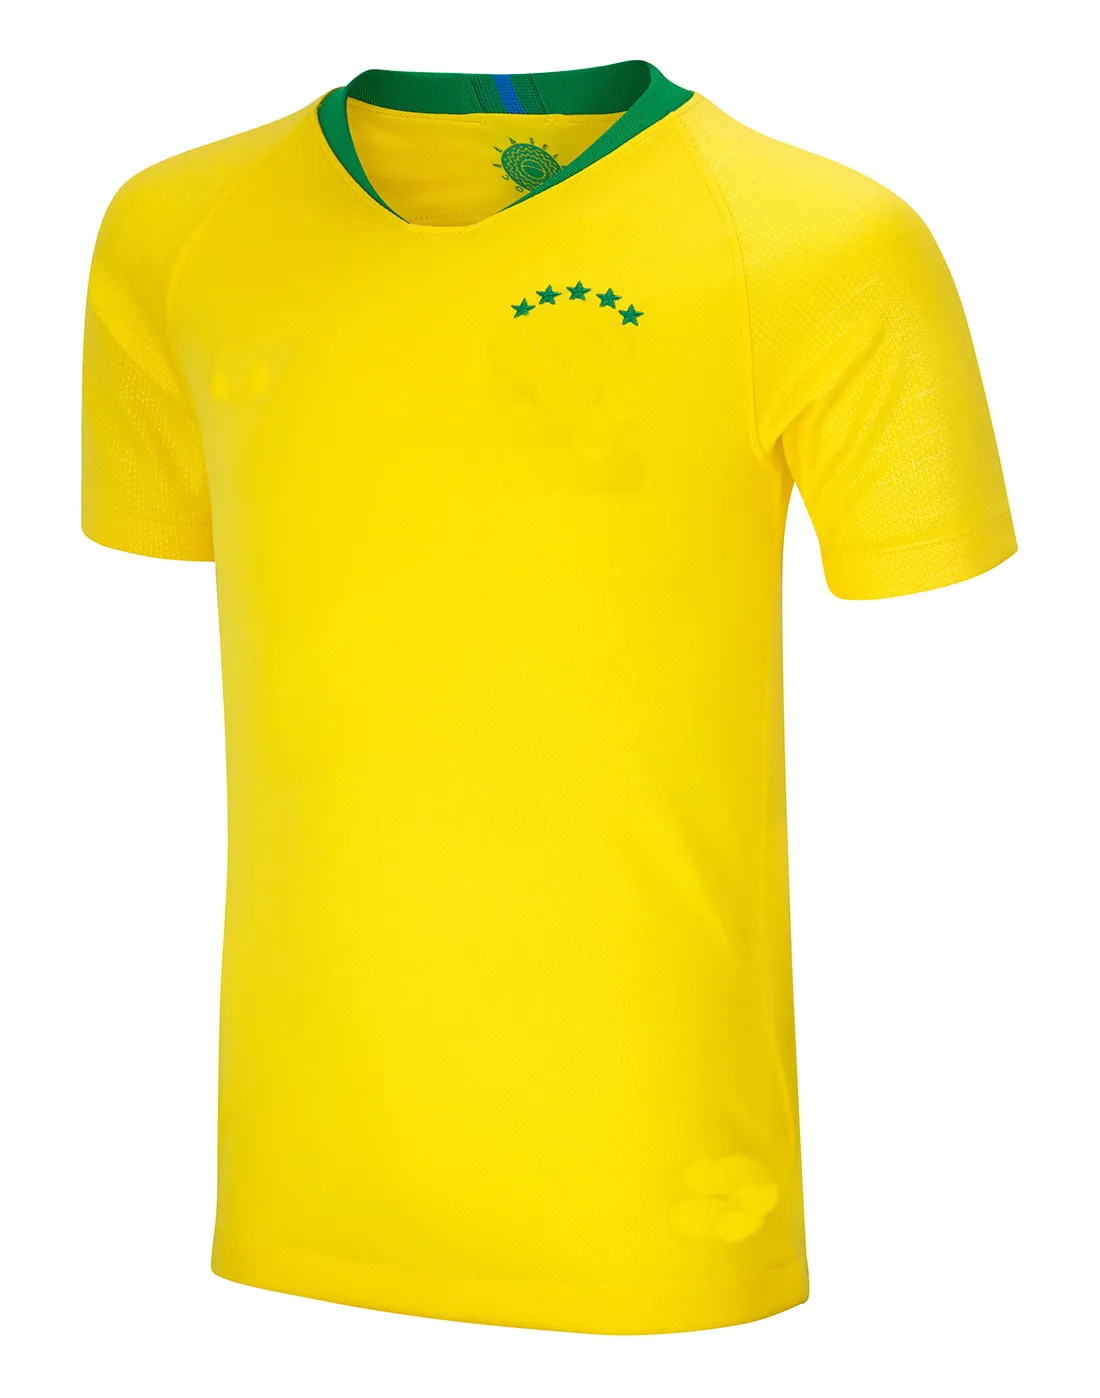 Tous les maillots de football de l'équipe du Brésil Mystery Boxes Promotion 2010-2022 Saison Thai Quality Football Shirts Blank Ou Player Jersey kingcaps nouveau